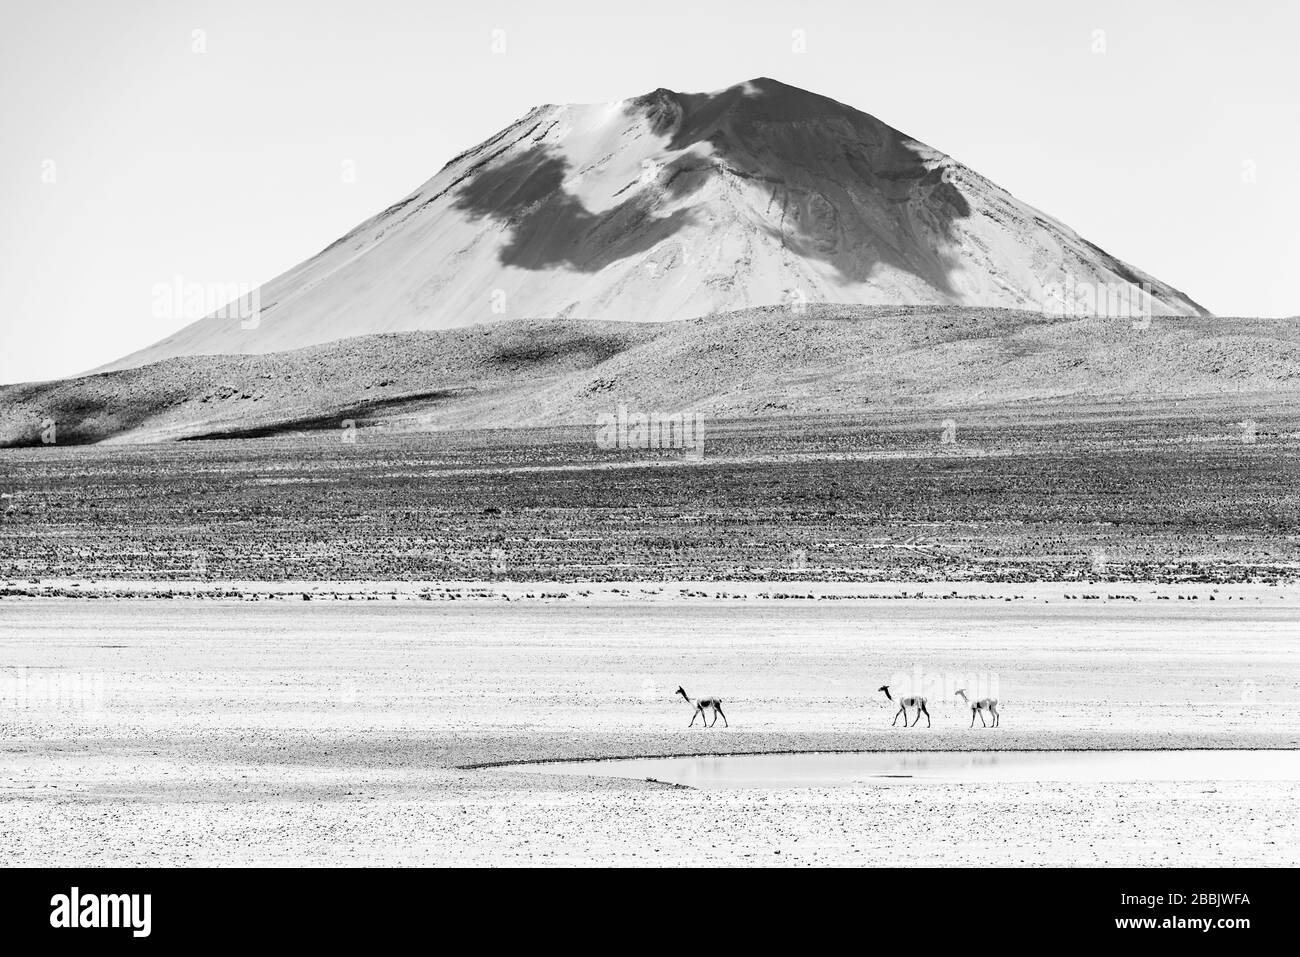 Photo noir et blanc à contraste élevé de trois vigognes marchant devant le volcan Misti près d'Arequipa, au Pérou. Banque D'Images